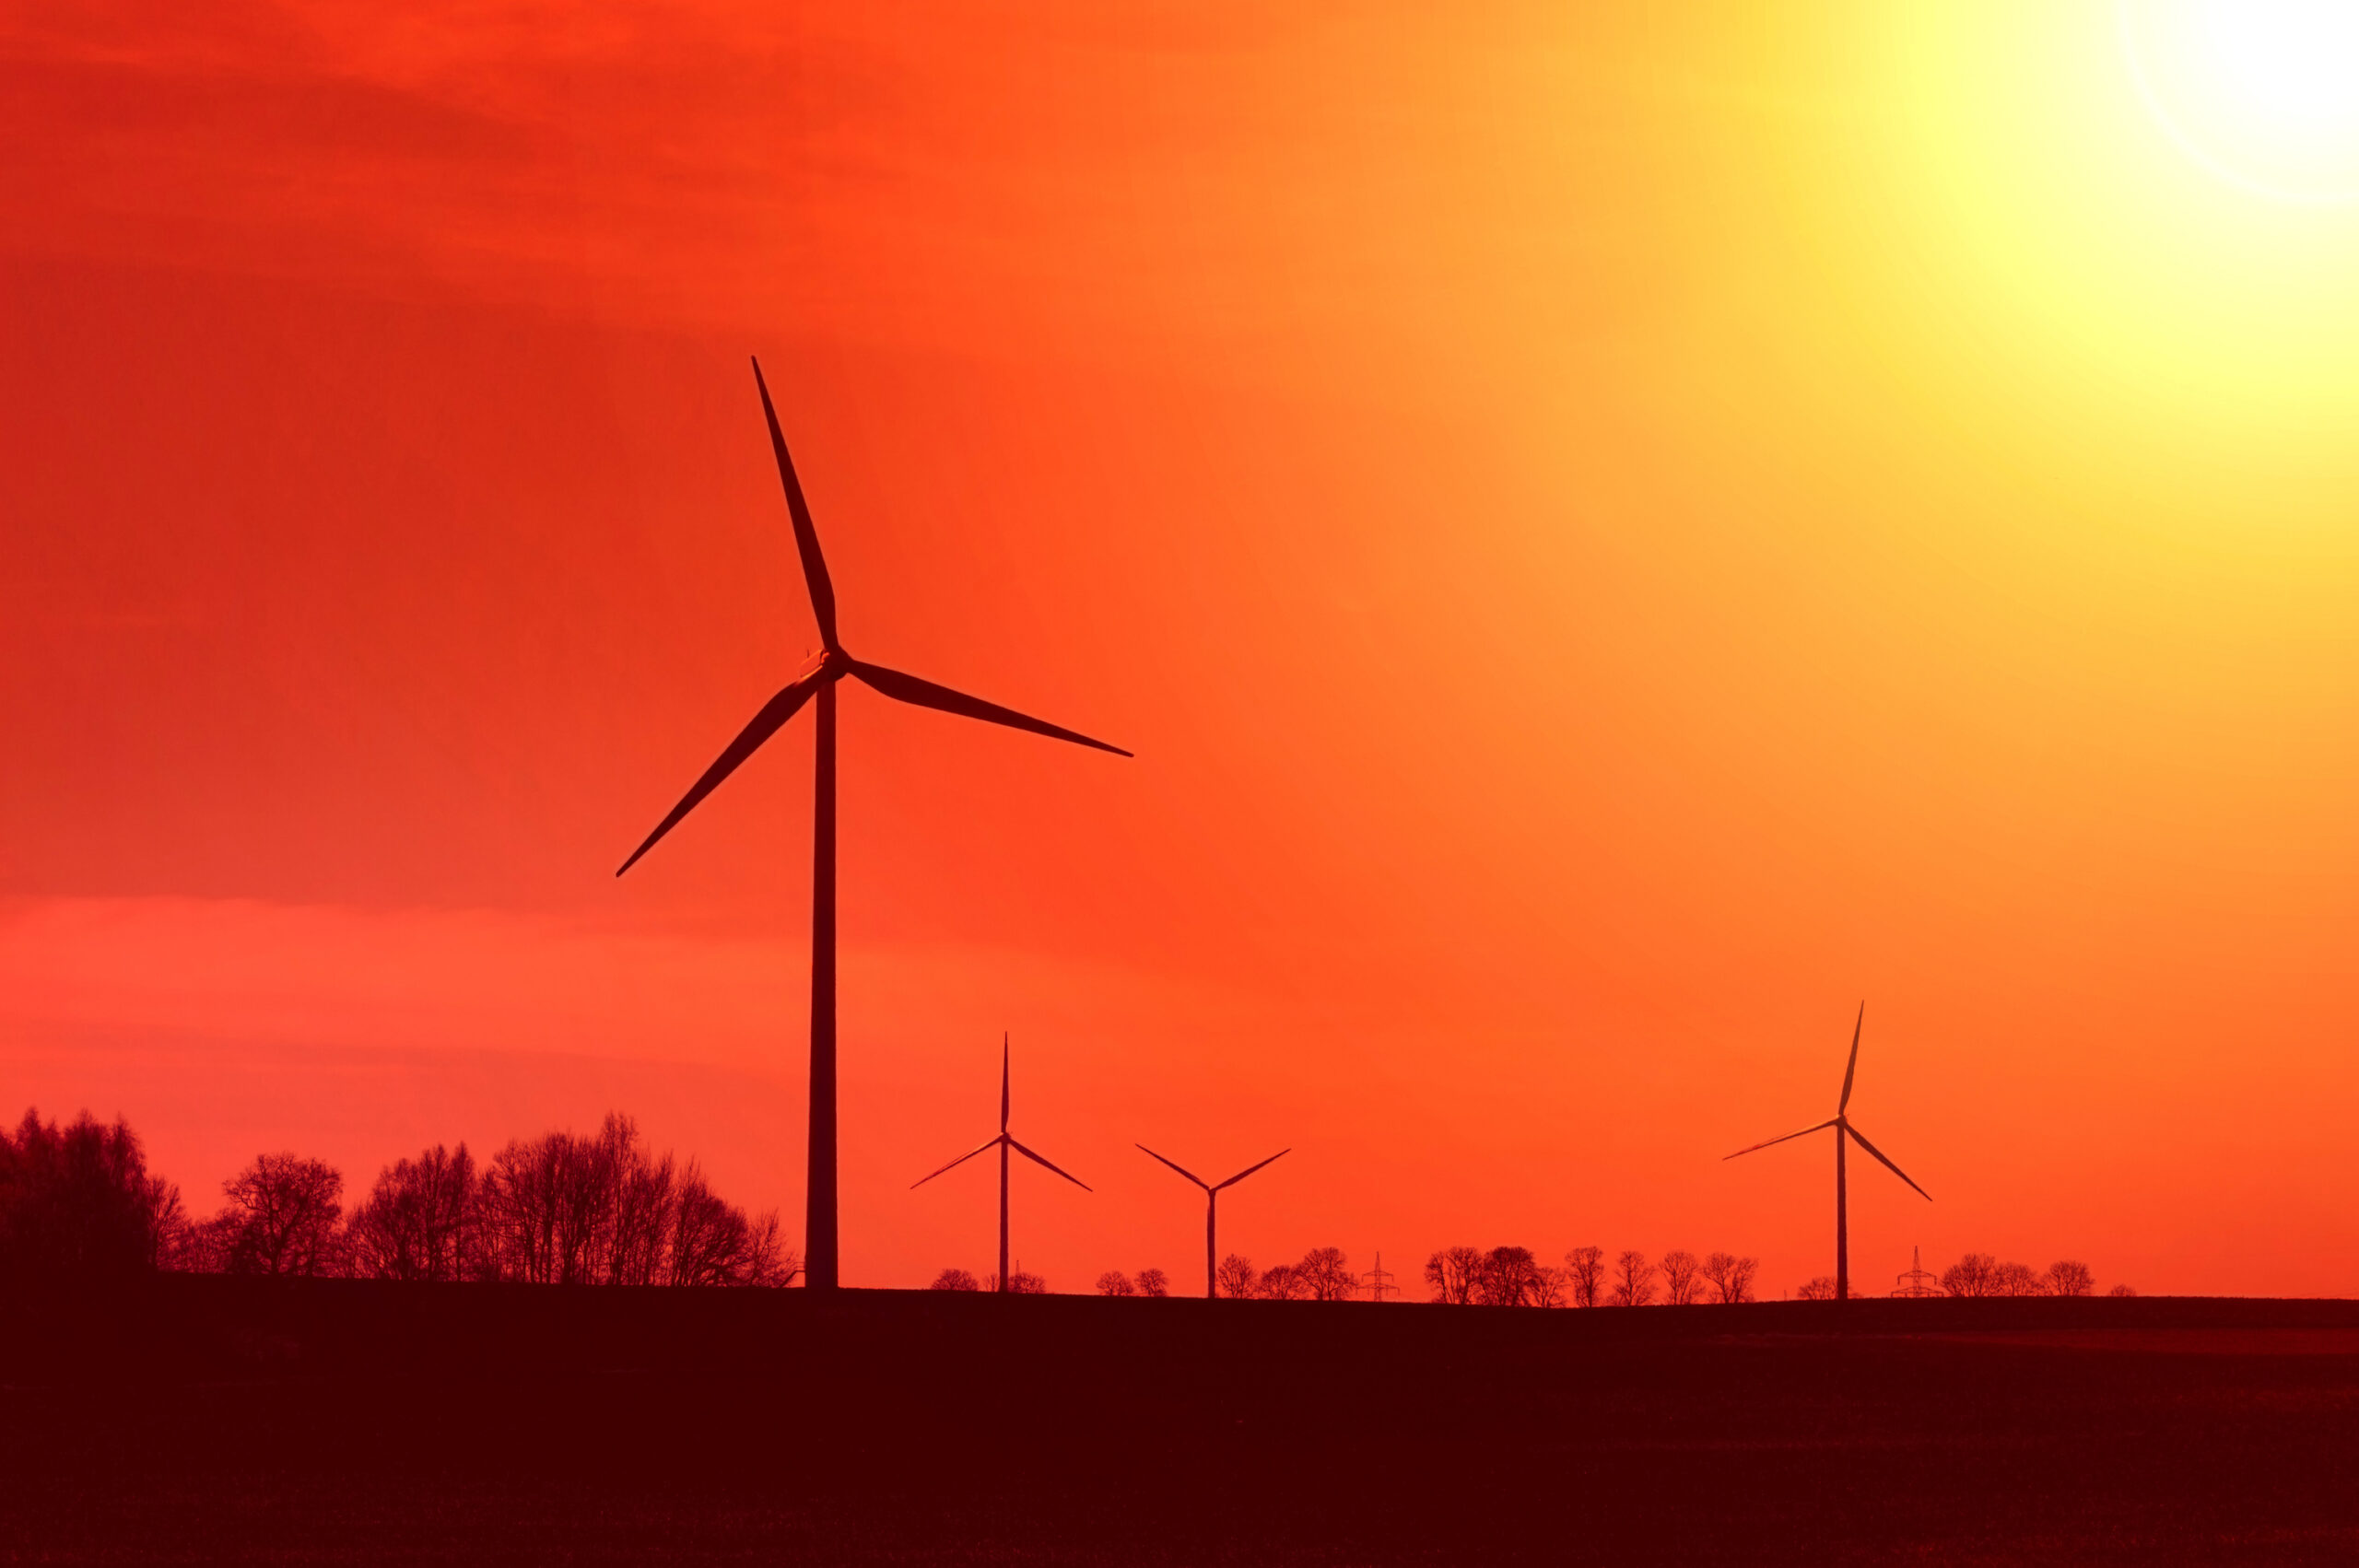 yeşil sanayi projesi ve kobi enerji verimliliği sayfası içinyenilenebilir enerjiyi temsilen rüzgar gülü görseli